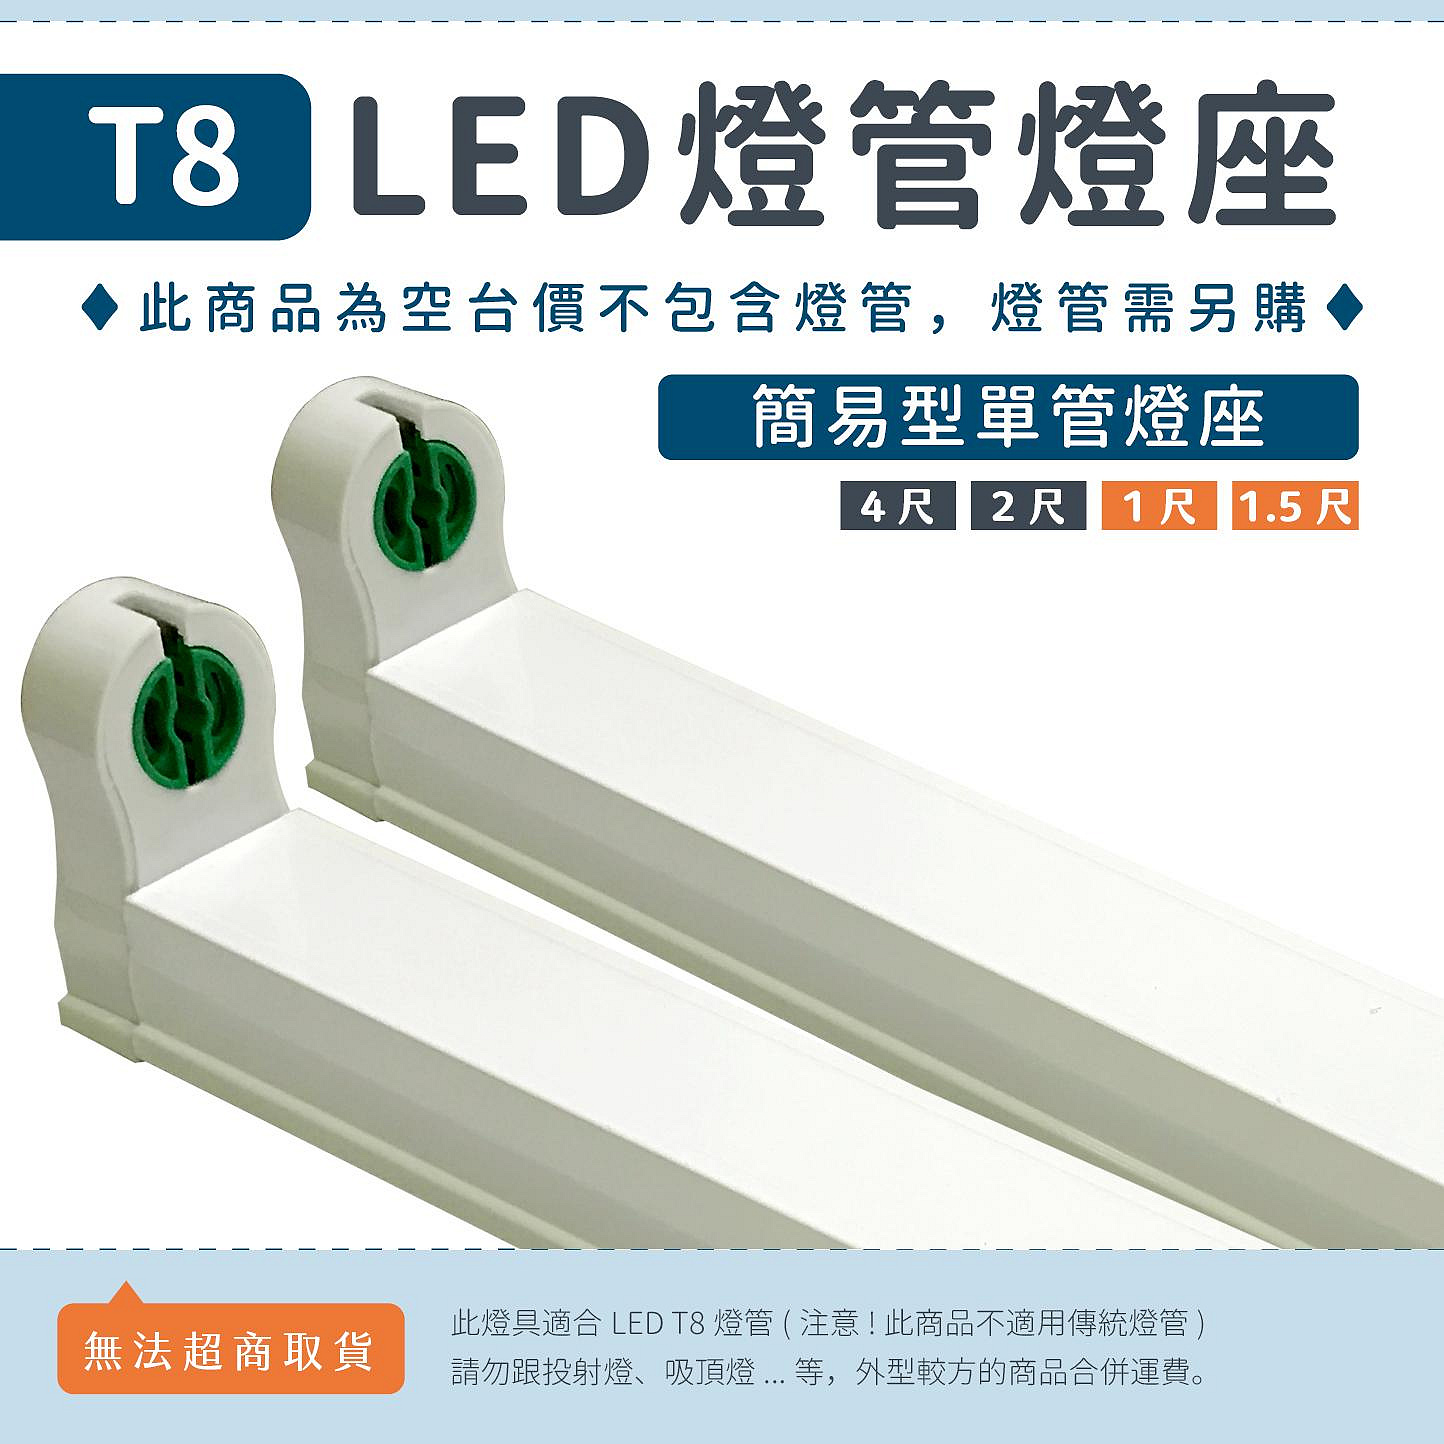 【4、2、1.5、1尺簡易燈座】T8 LED燈管專用 日光燈座 單管空台 層板燈座 可串接▸宗聖照明◂